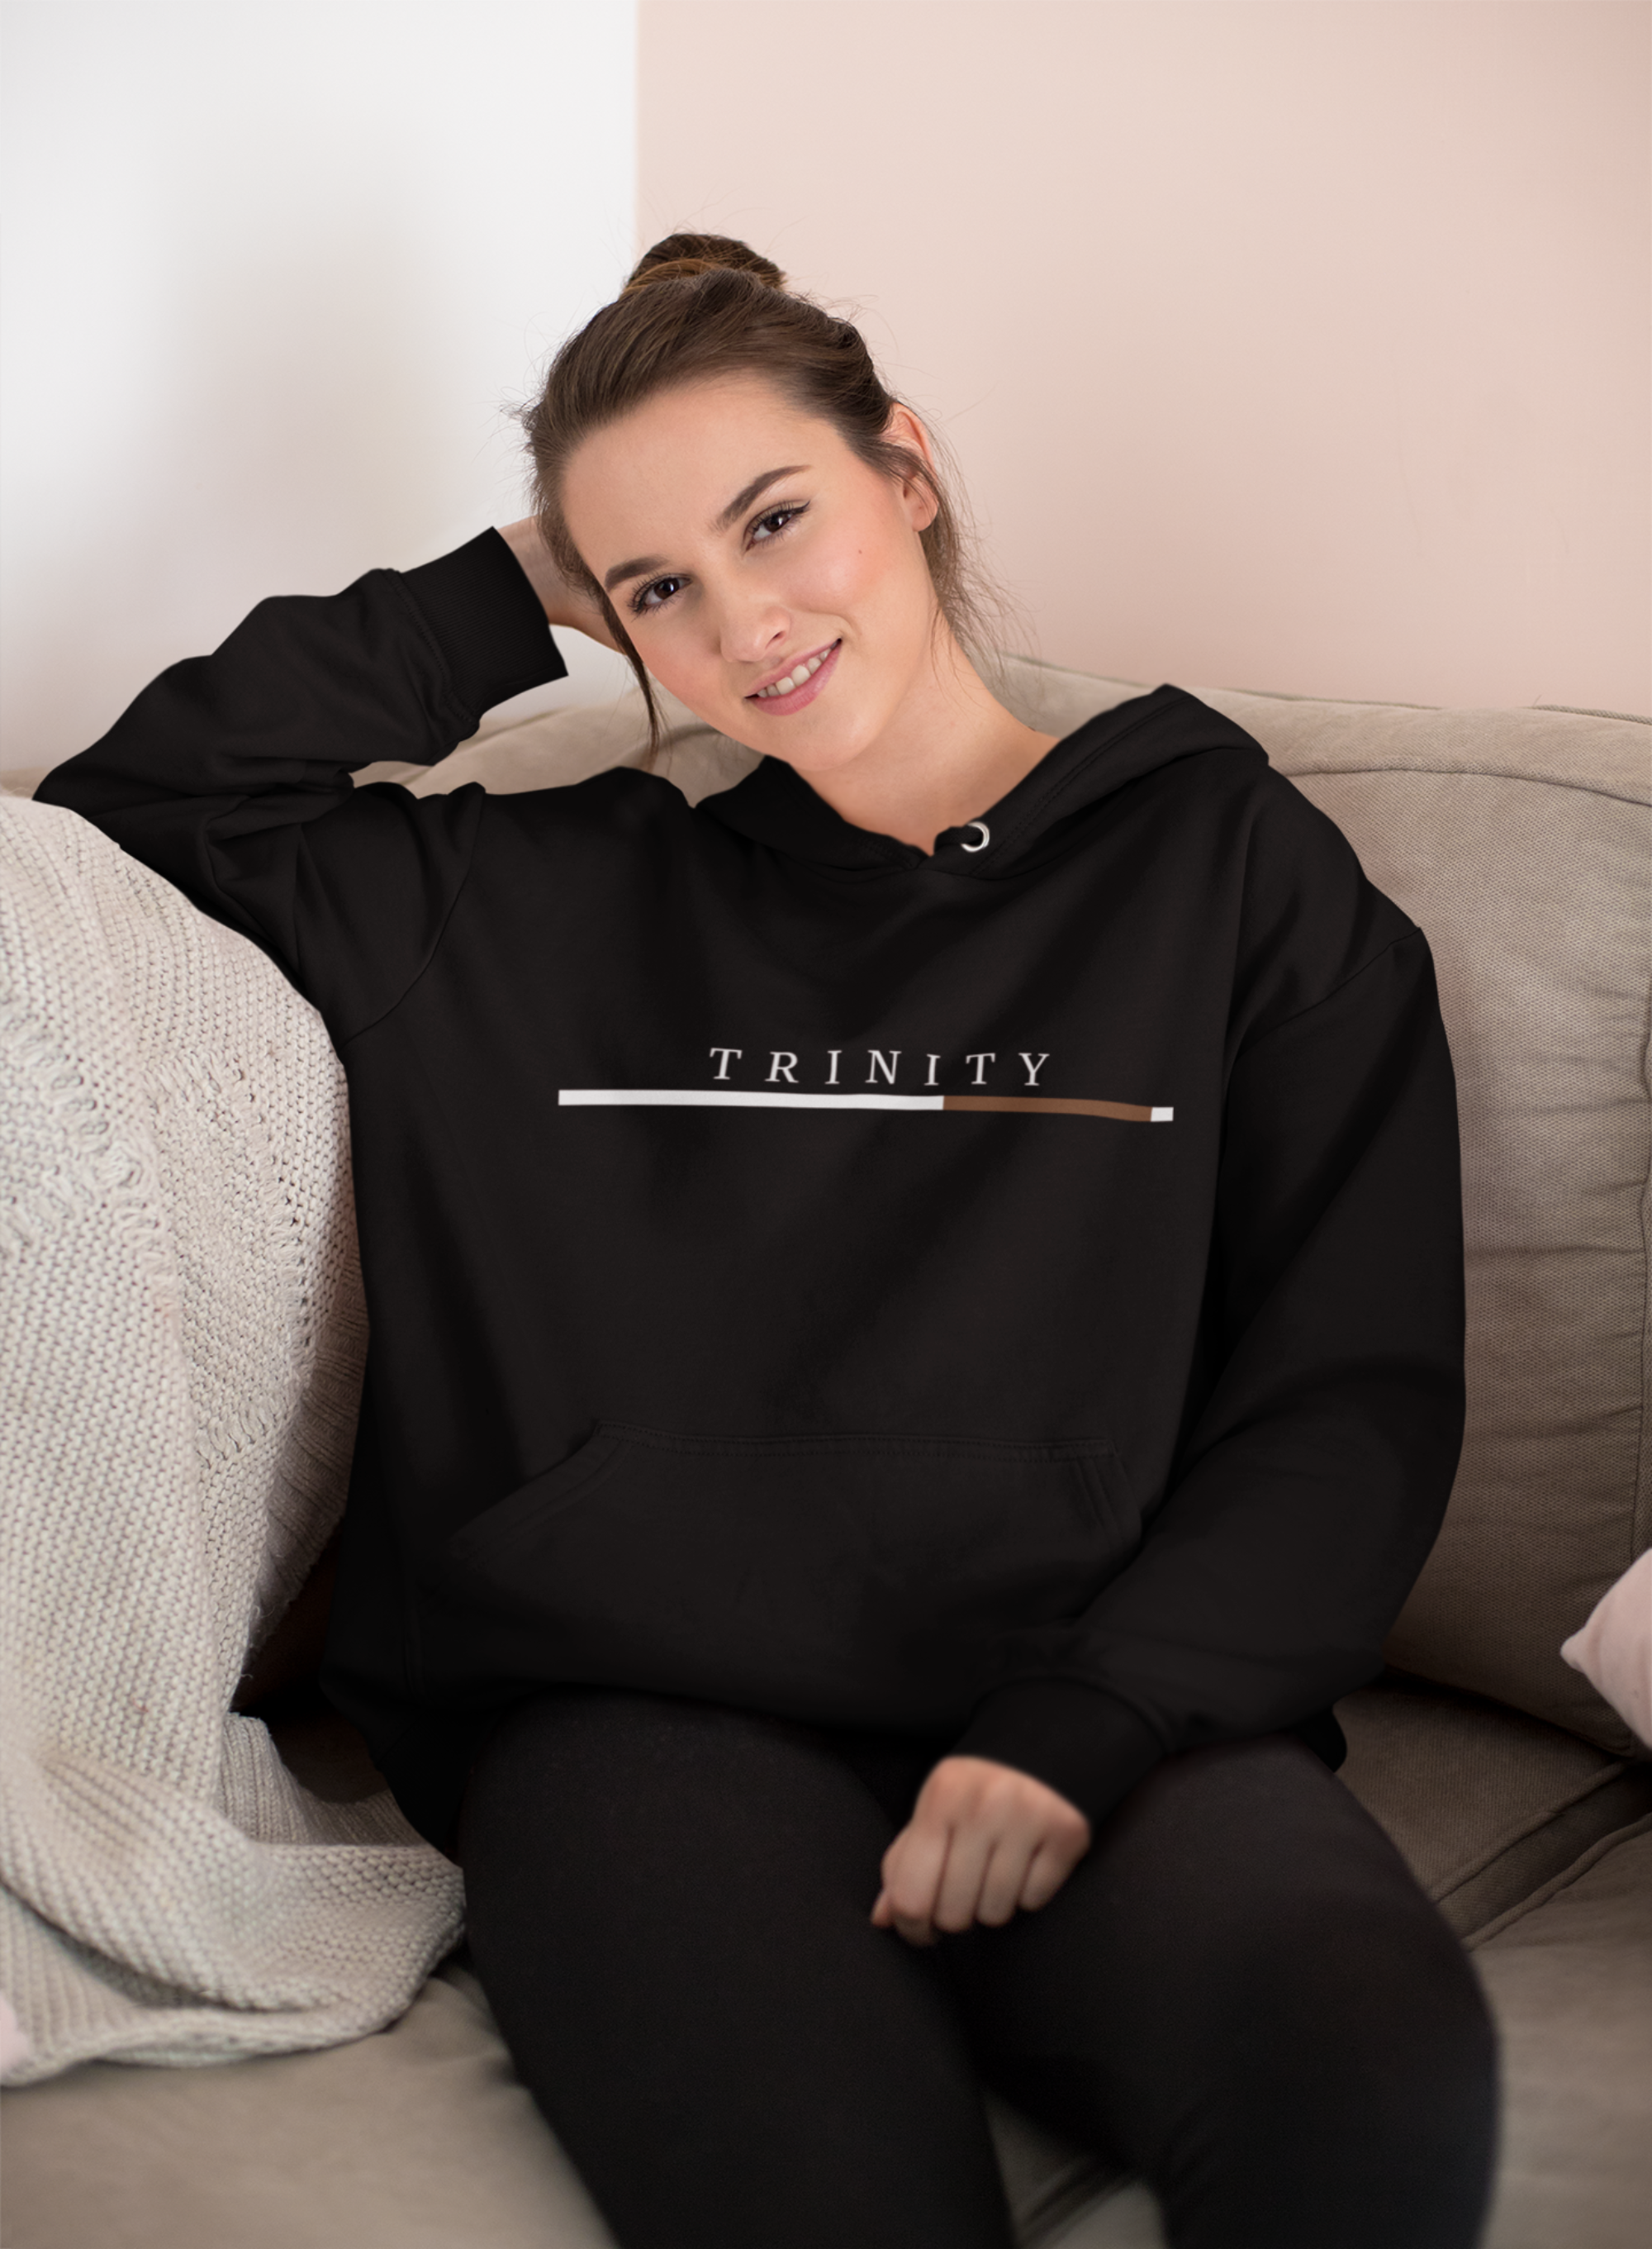 Trinity - Women Heavy Blend Hooded Sweatshirt